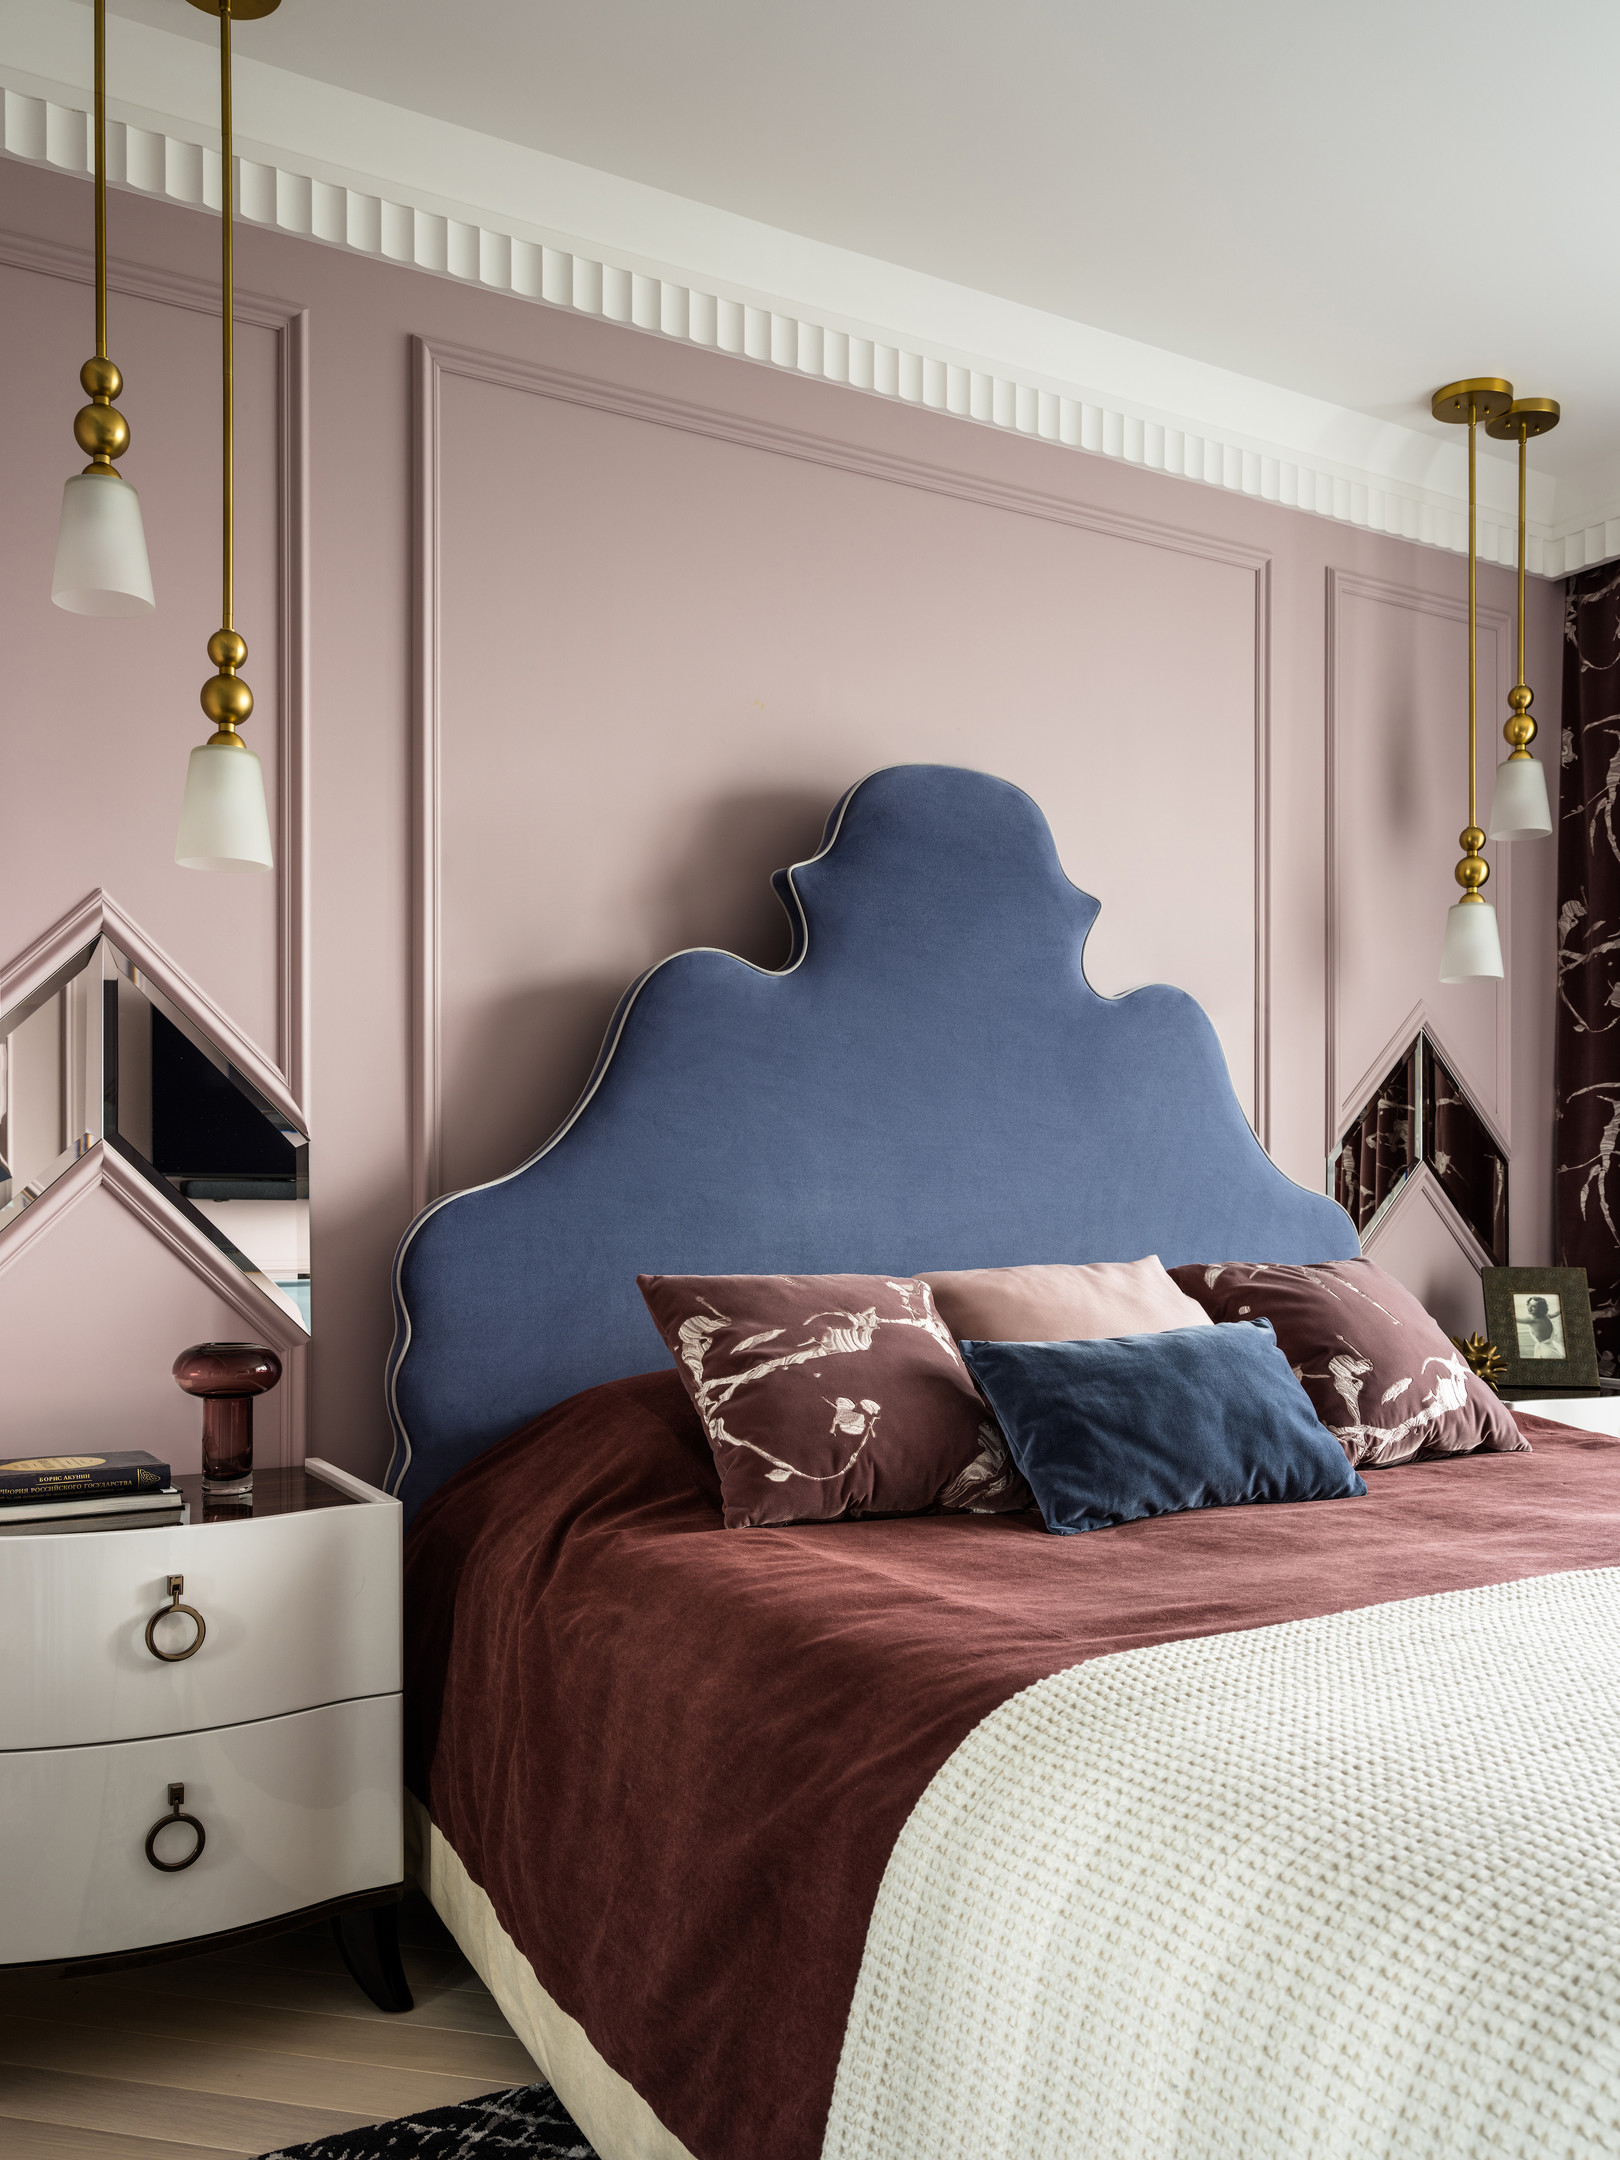 Phòng ngủ thiết kế theo phong cách cổ điển sang trọng với phần đầu giường màu xanh lam nổi bật trên nền tường sơn màu hồng phấn. Tất cả tạo nên một bầu không khí dễ chịu cho không gian thư giãn cuối ngày.